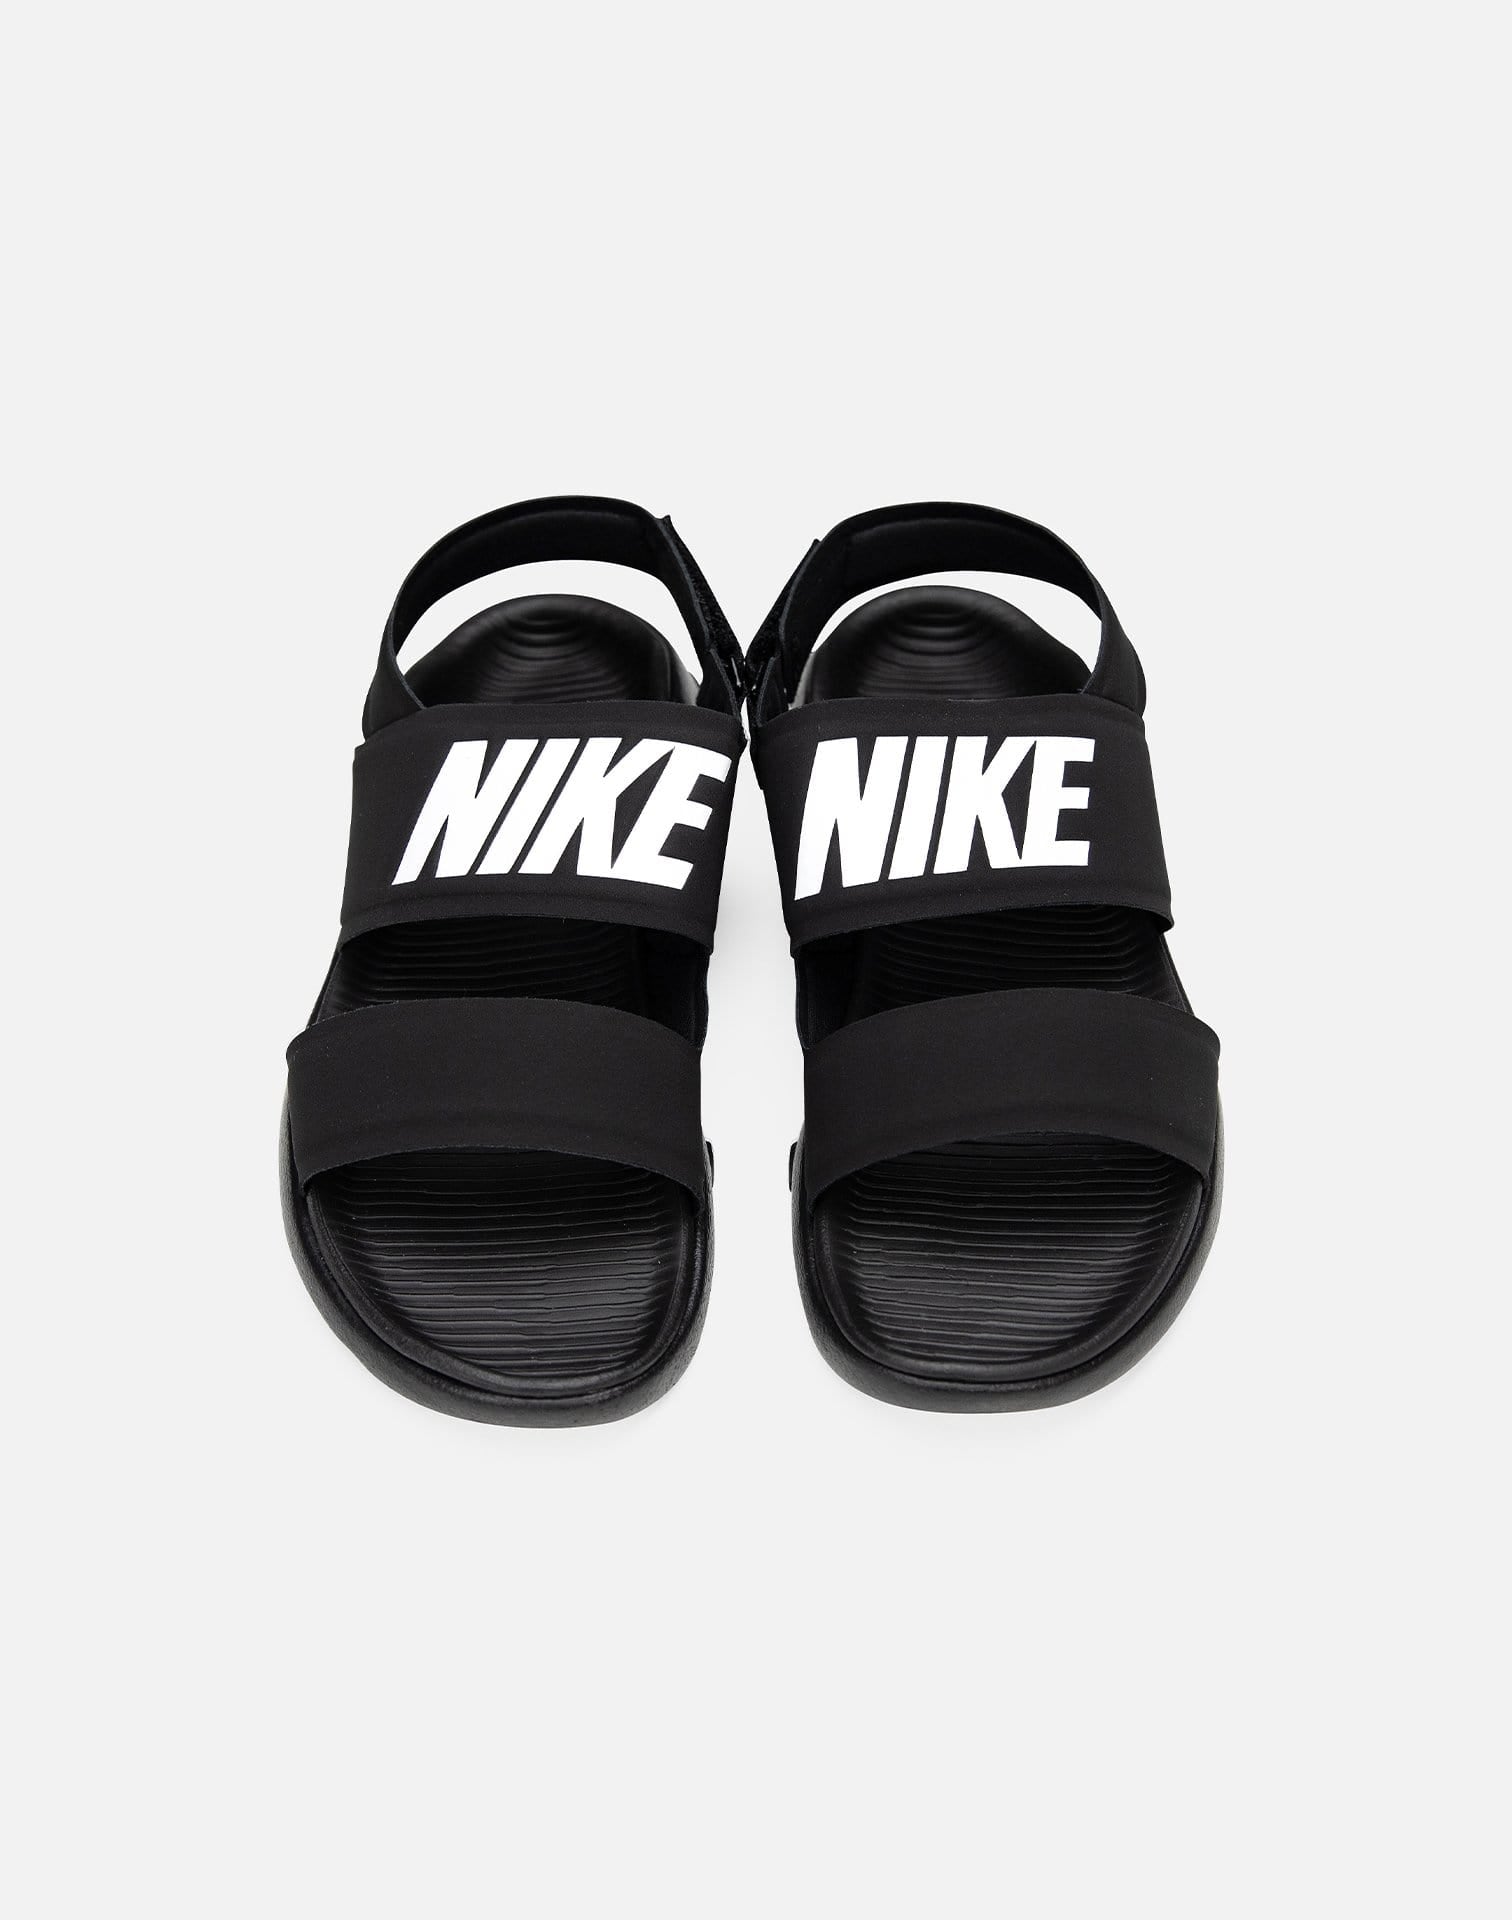 Nike Sandals DTLR